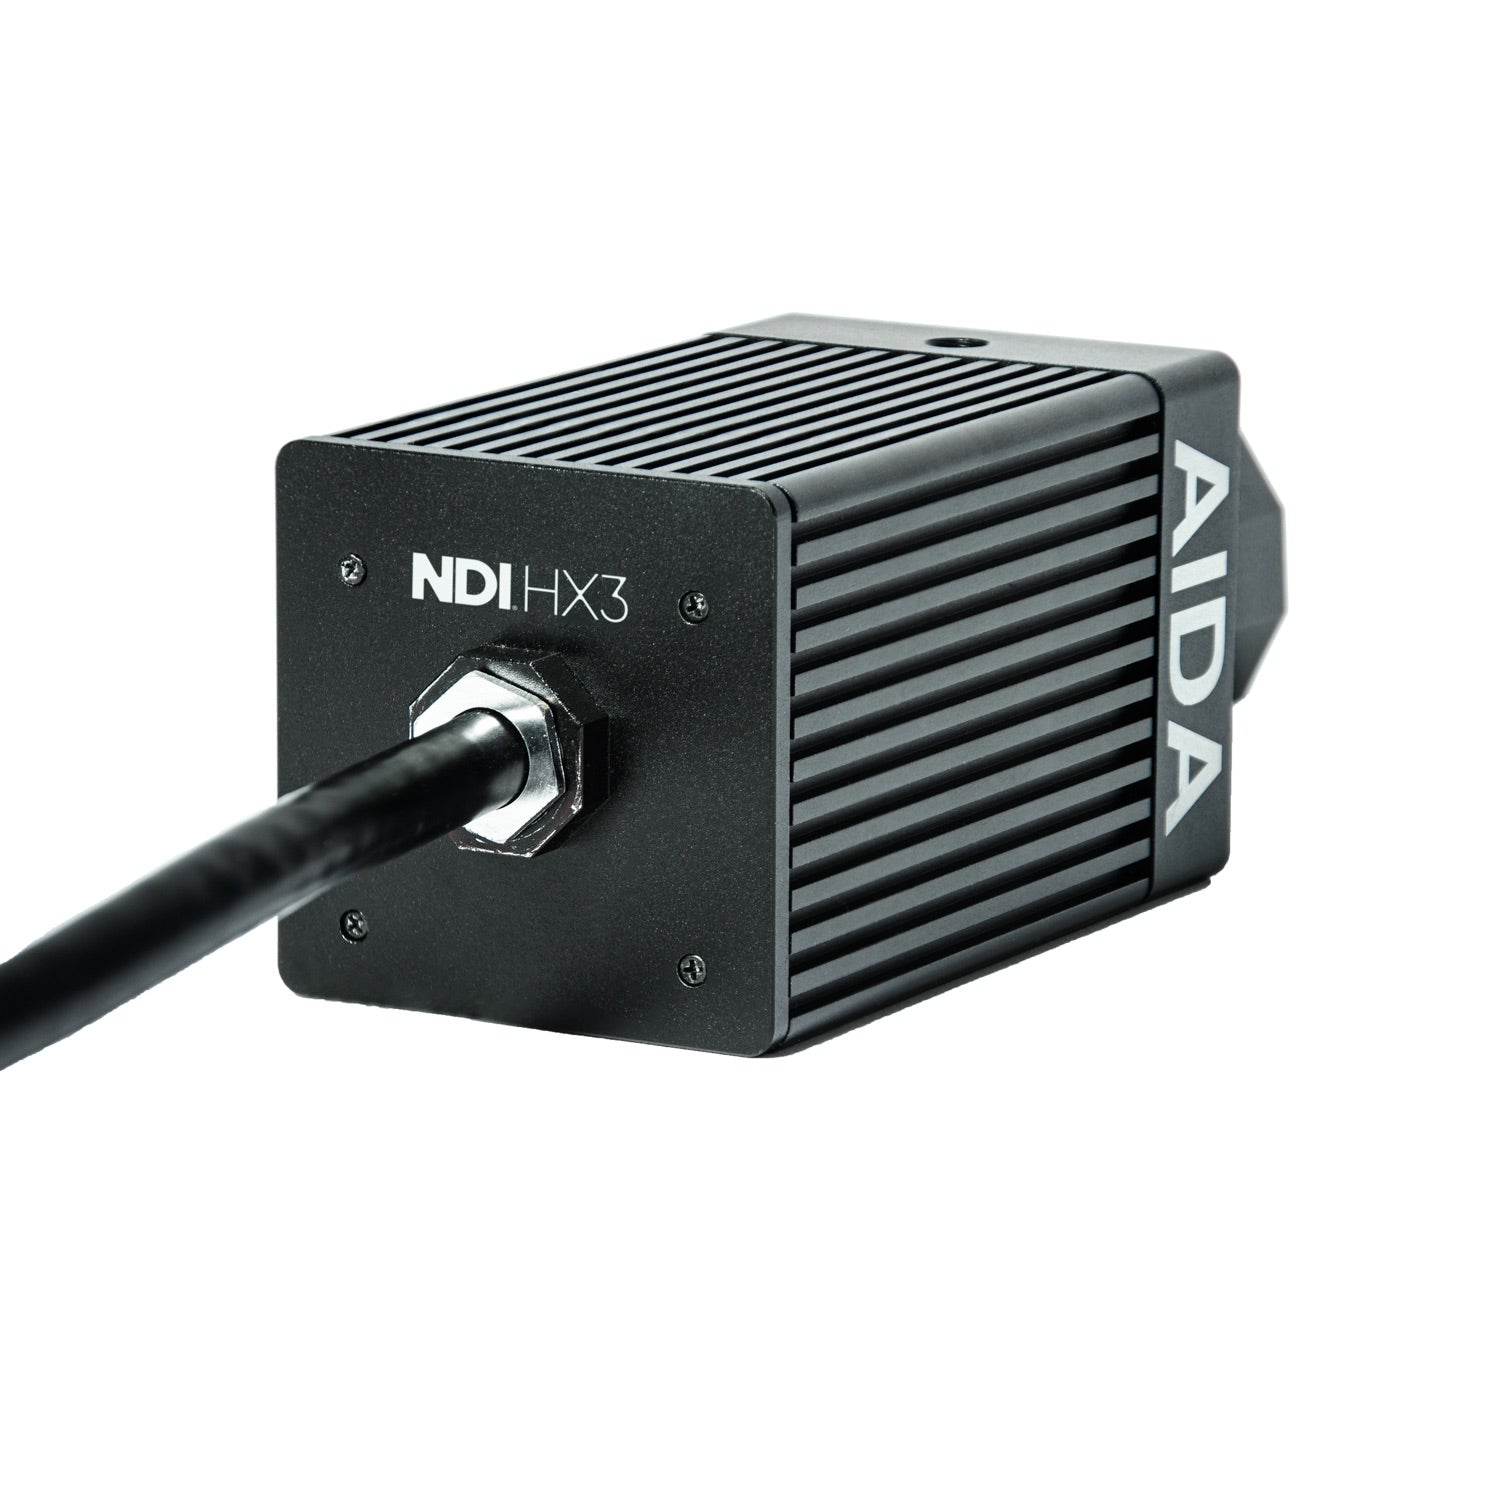 AIDA Imaging HD-NDI3-IP67 - HD NDI|HX3 Weatherproof POV Camera with 120fps, rear angle